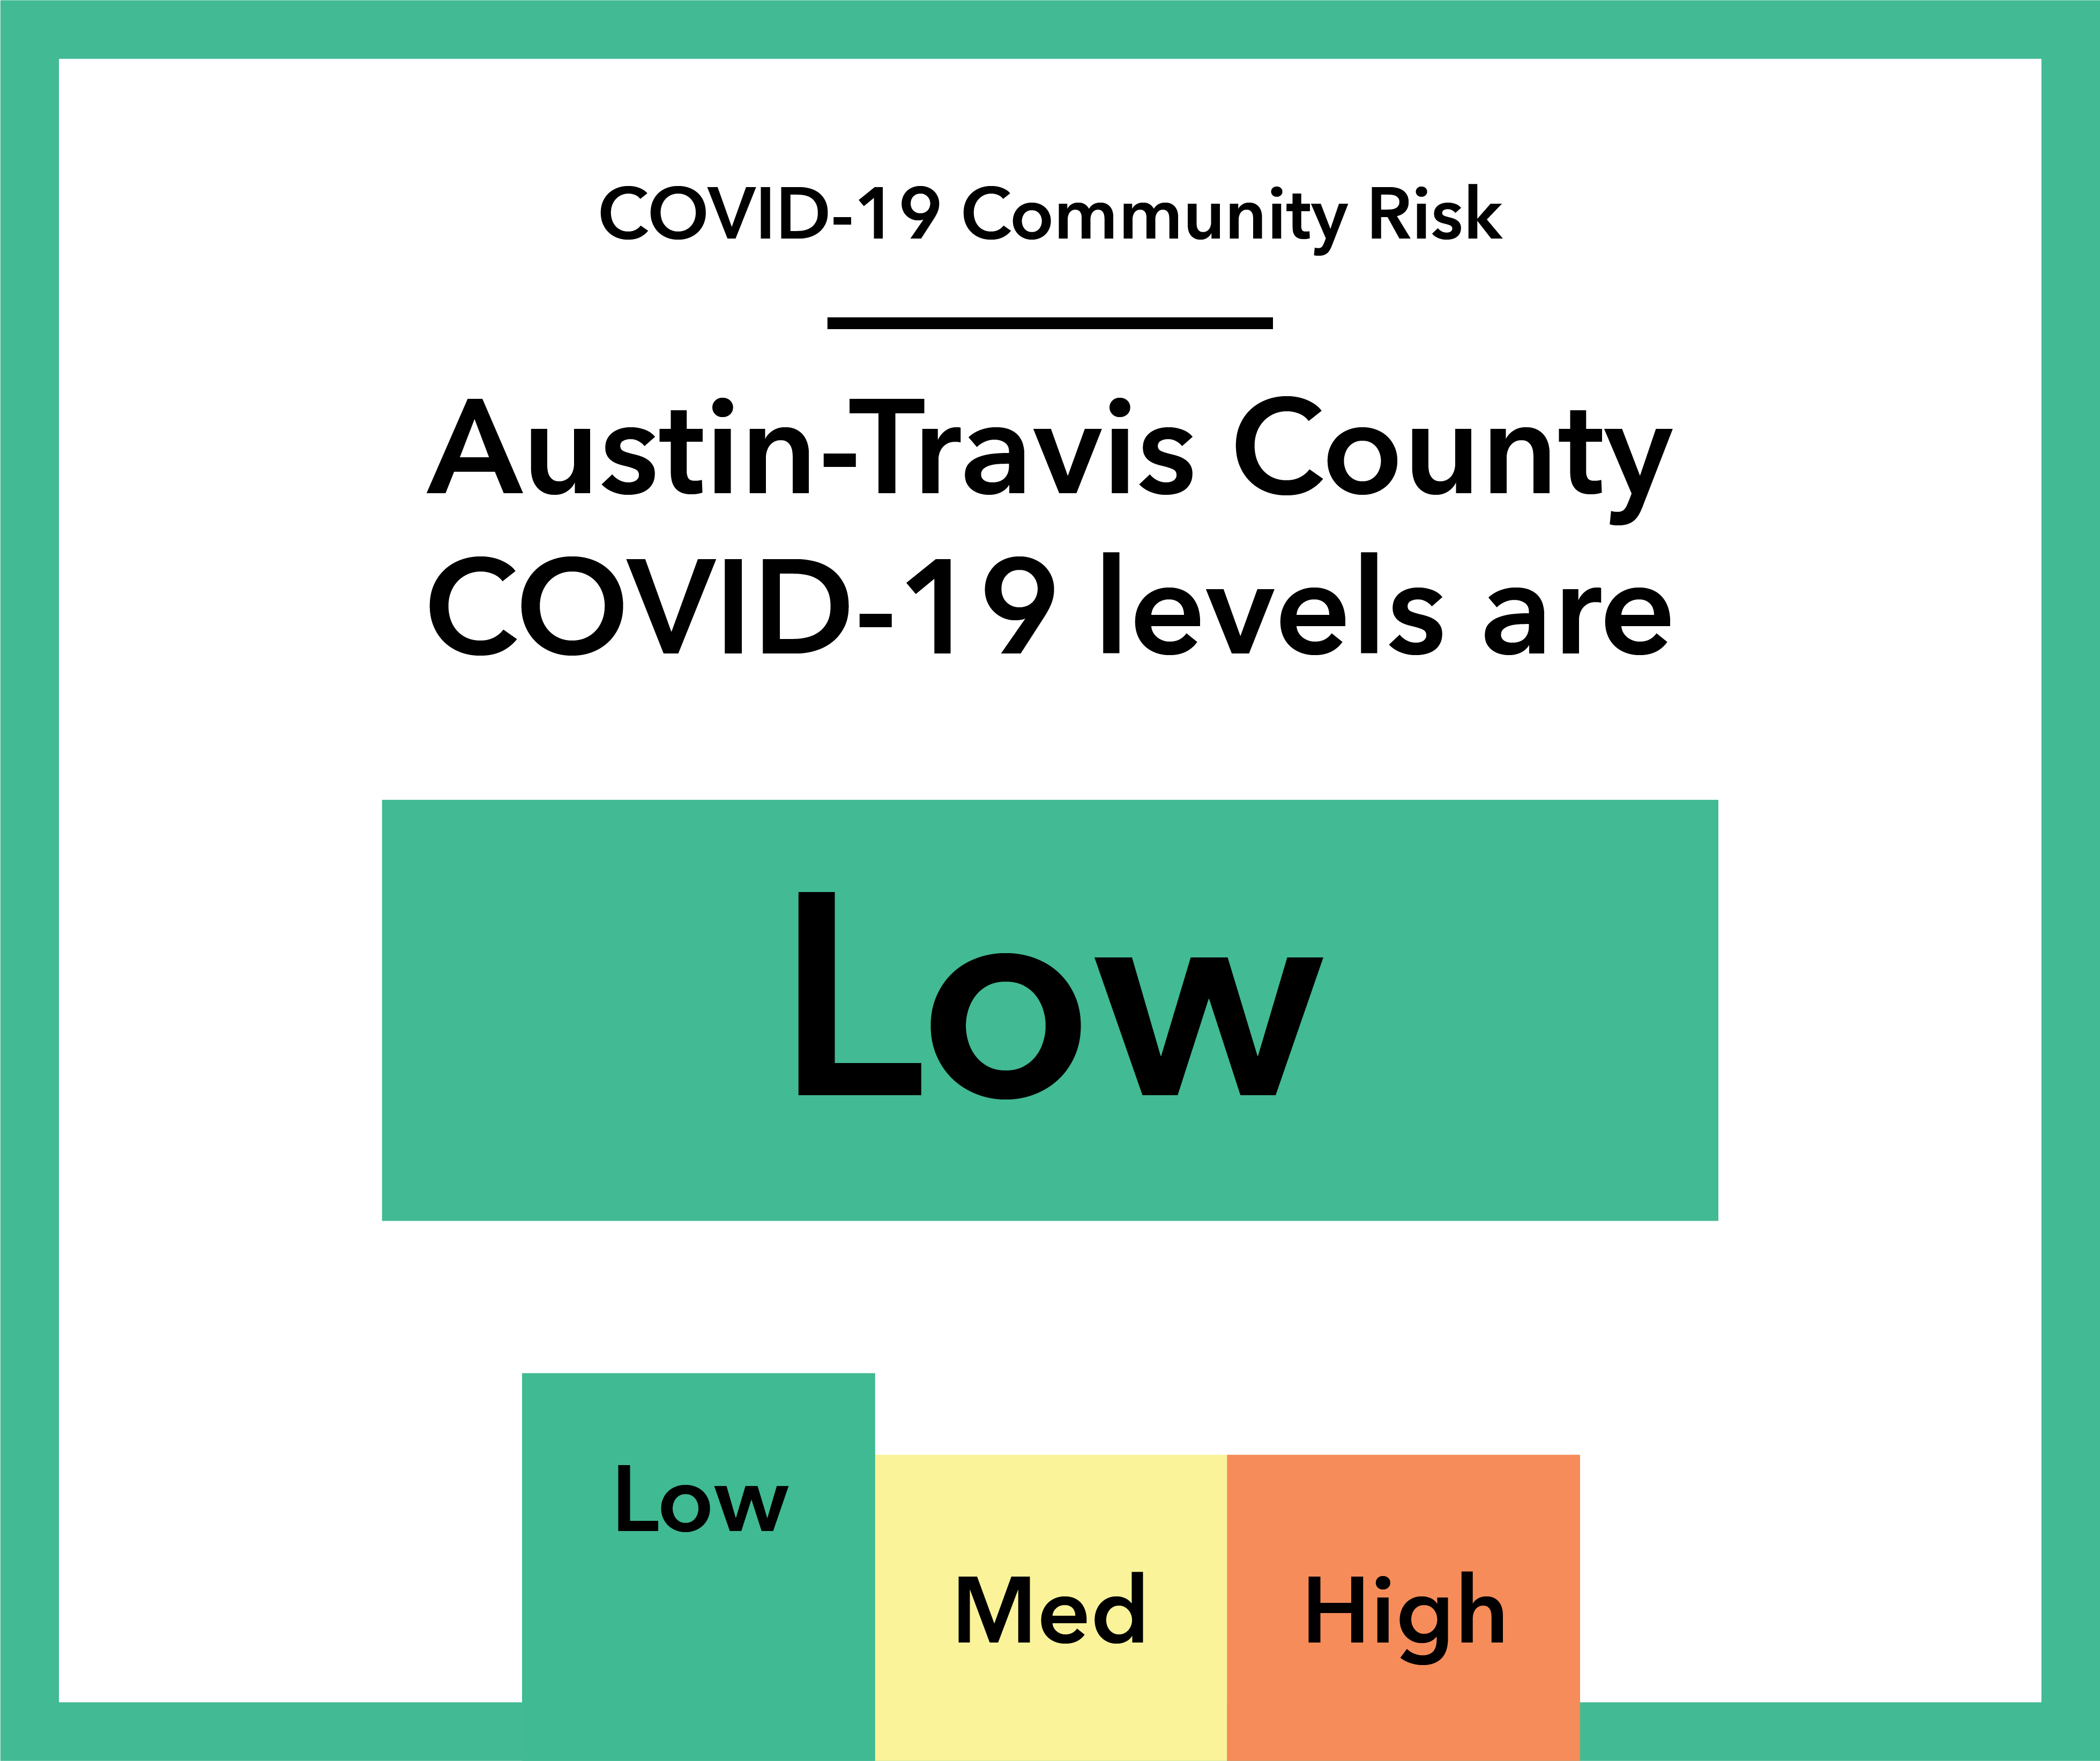 COVID-19 Community Levels: Low